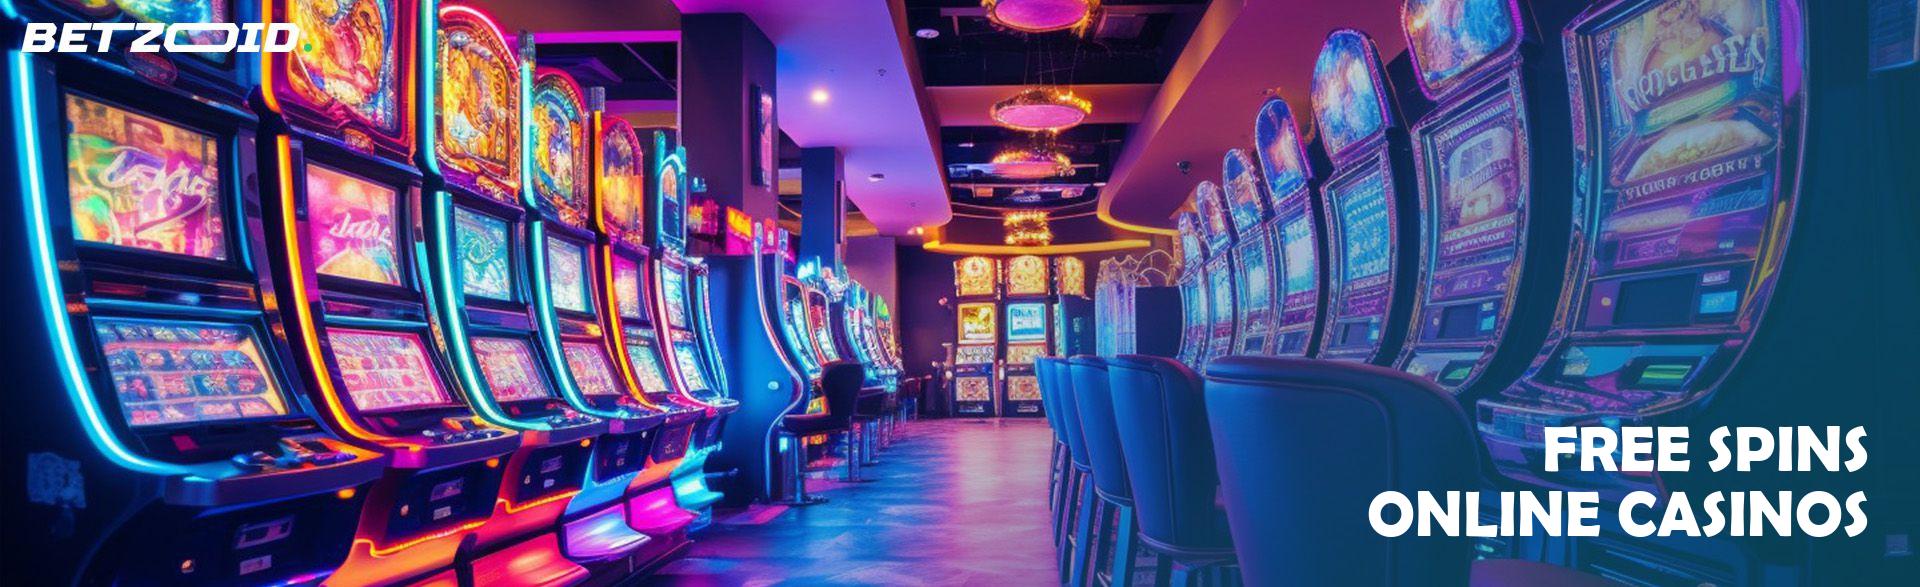 Free Spins Online Casinos.